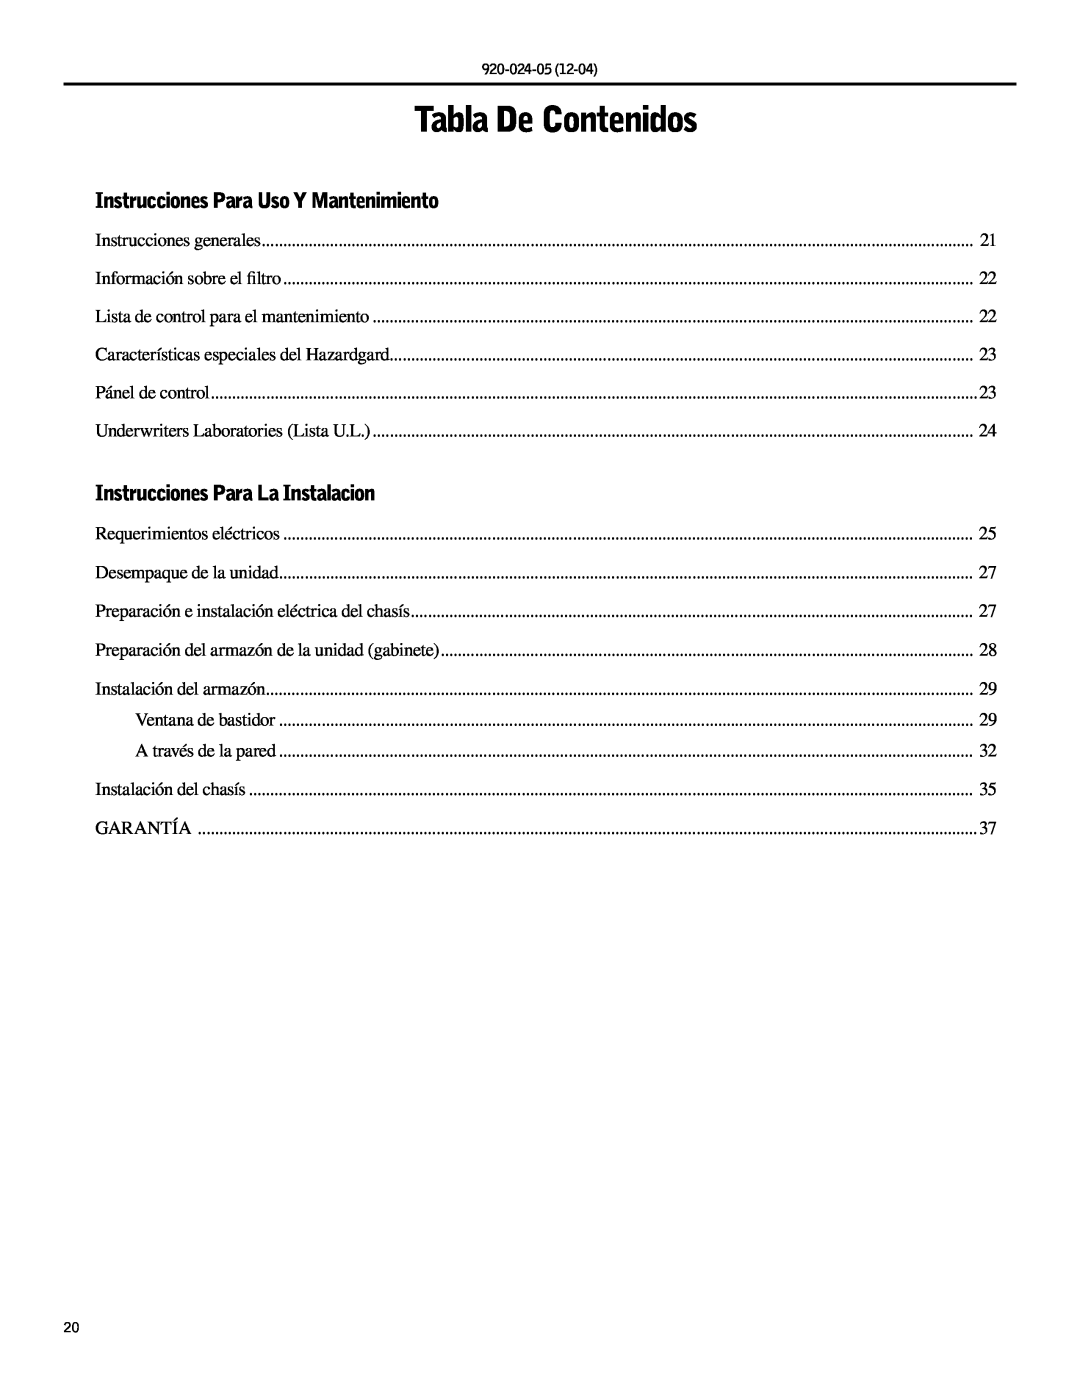 Friedrich SH15, SH20 Tabla De Contenidos, Instrucciones Para Uso Y Mantenimiento, Instrucciones Para La Instalacion 